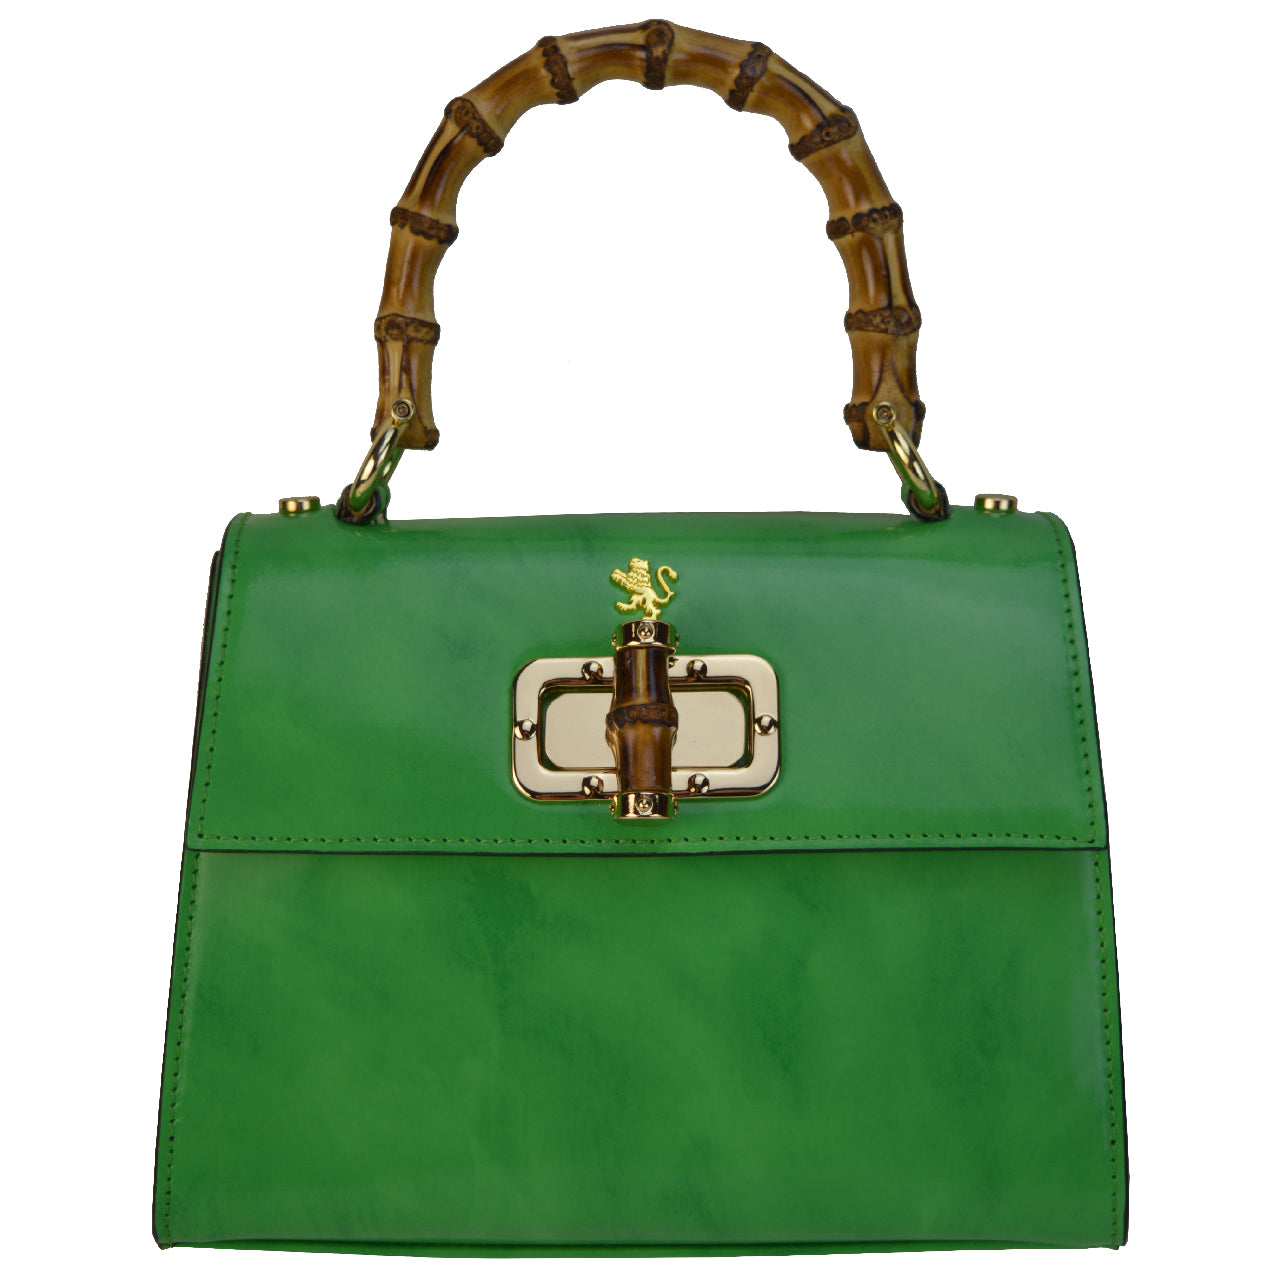 Pratesi Castalia Lady Bag in genuine Italian leather - Brunelleschi Leather Emerald